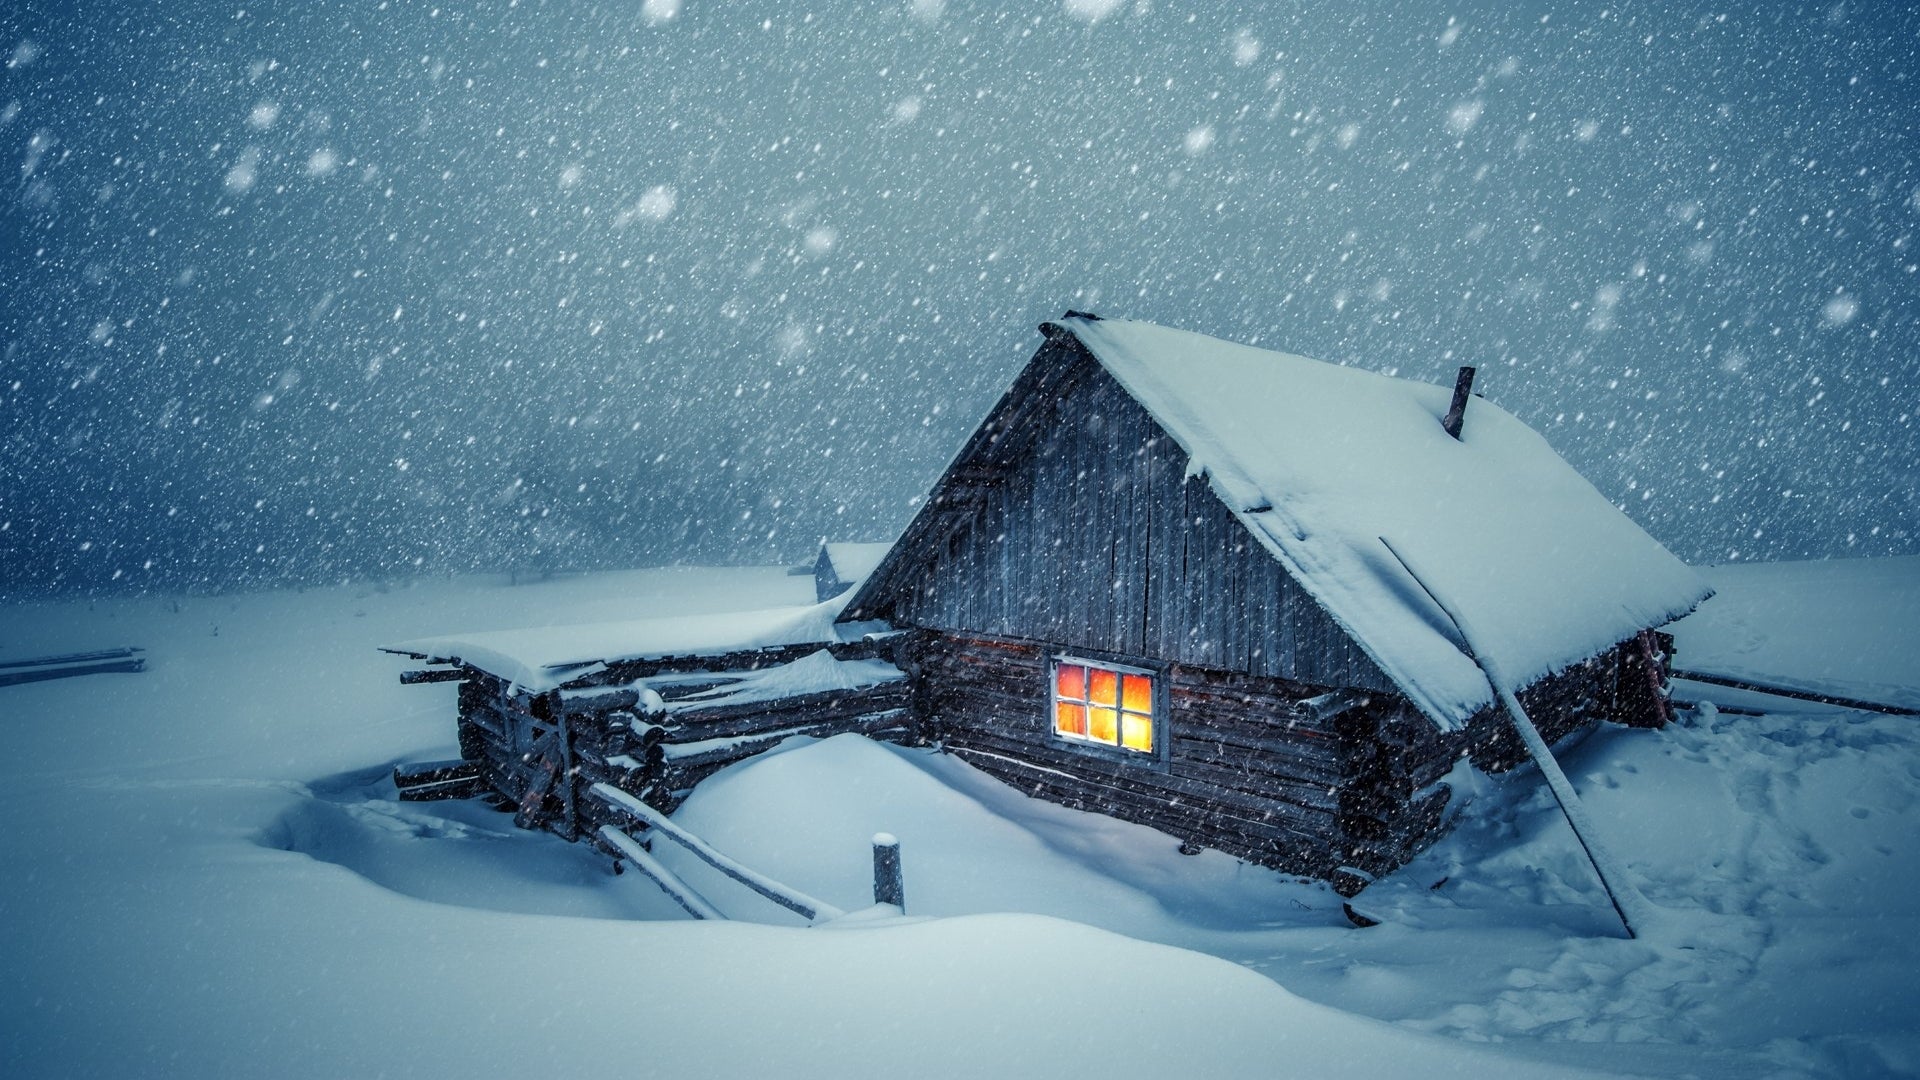 A snowy cabin (1920x1080)